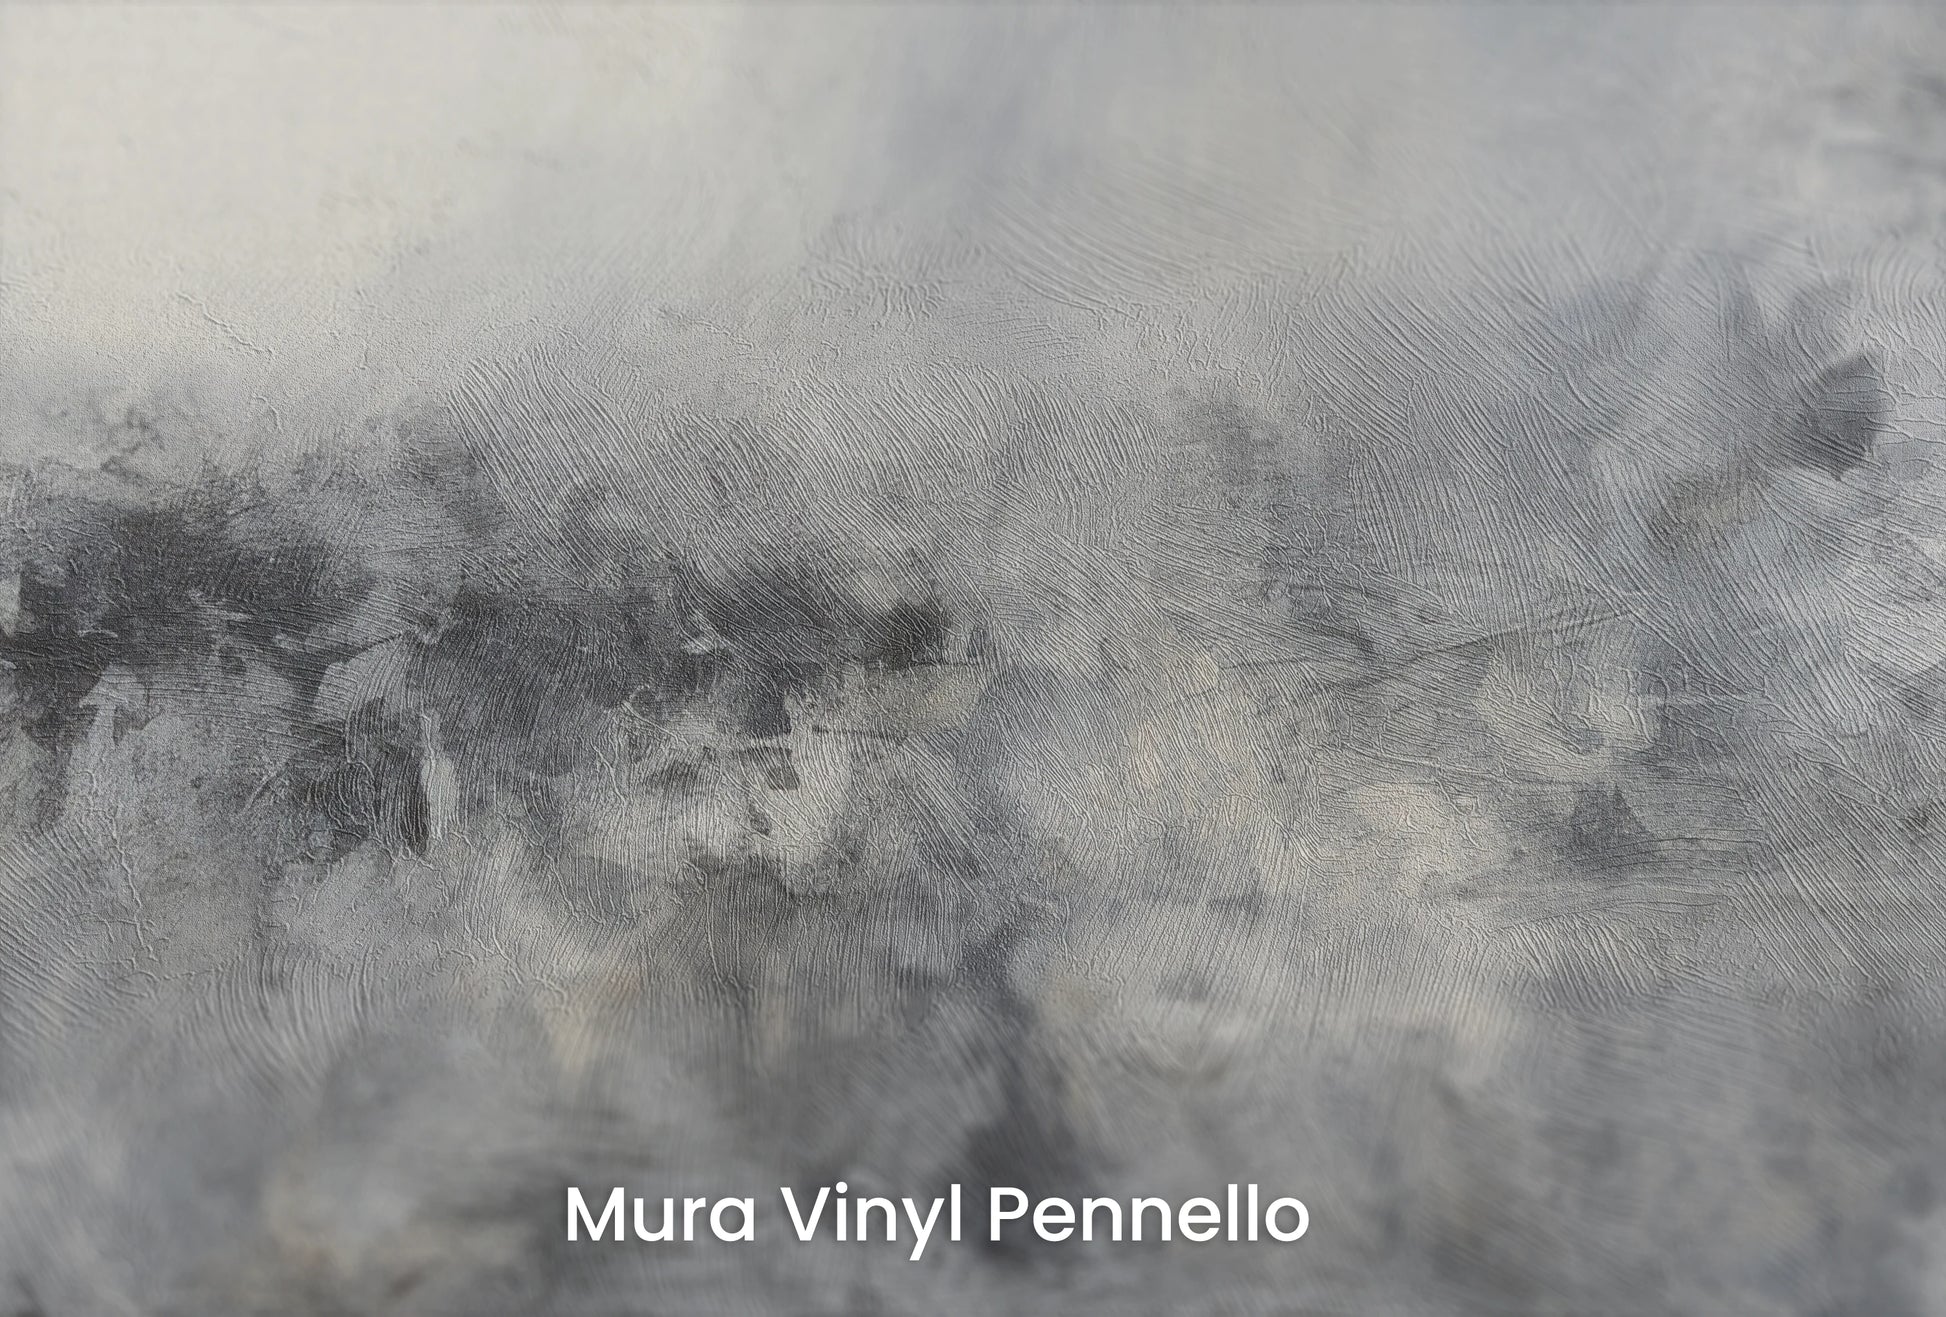 Zbliżenie na artystyczną fototapetę o nazwie Monochrome Mystery na podłożu Mura Vinyl Pennello - faktura pociągnięć pędzla malarskiego.